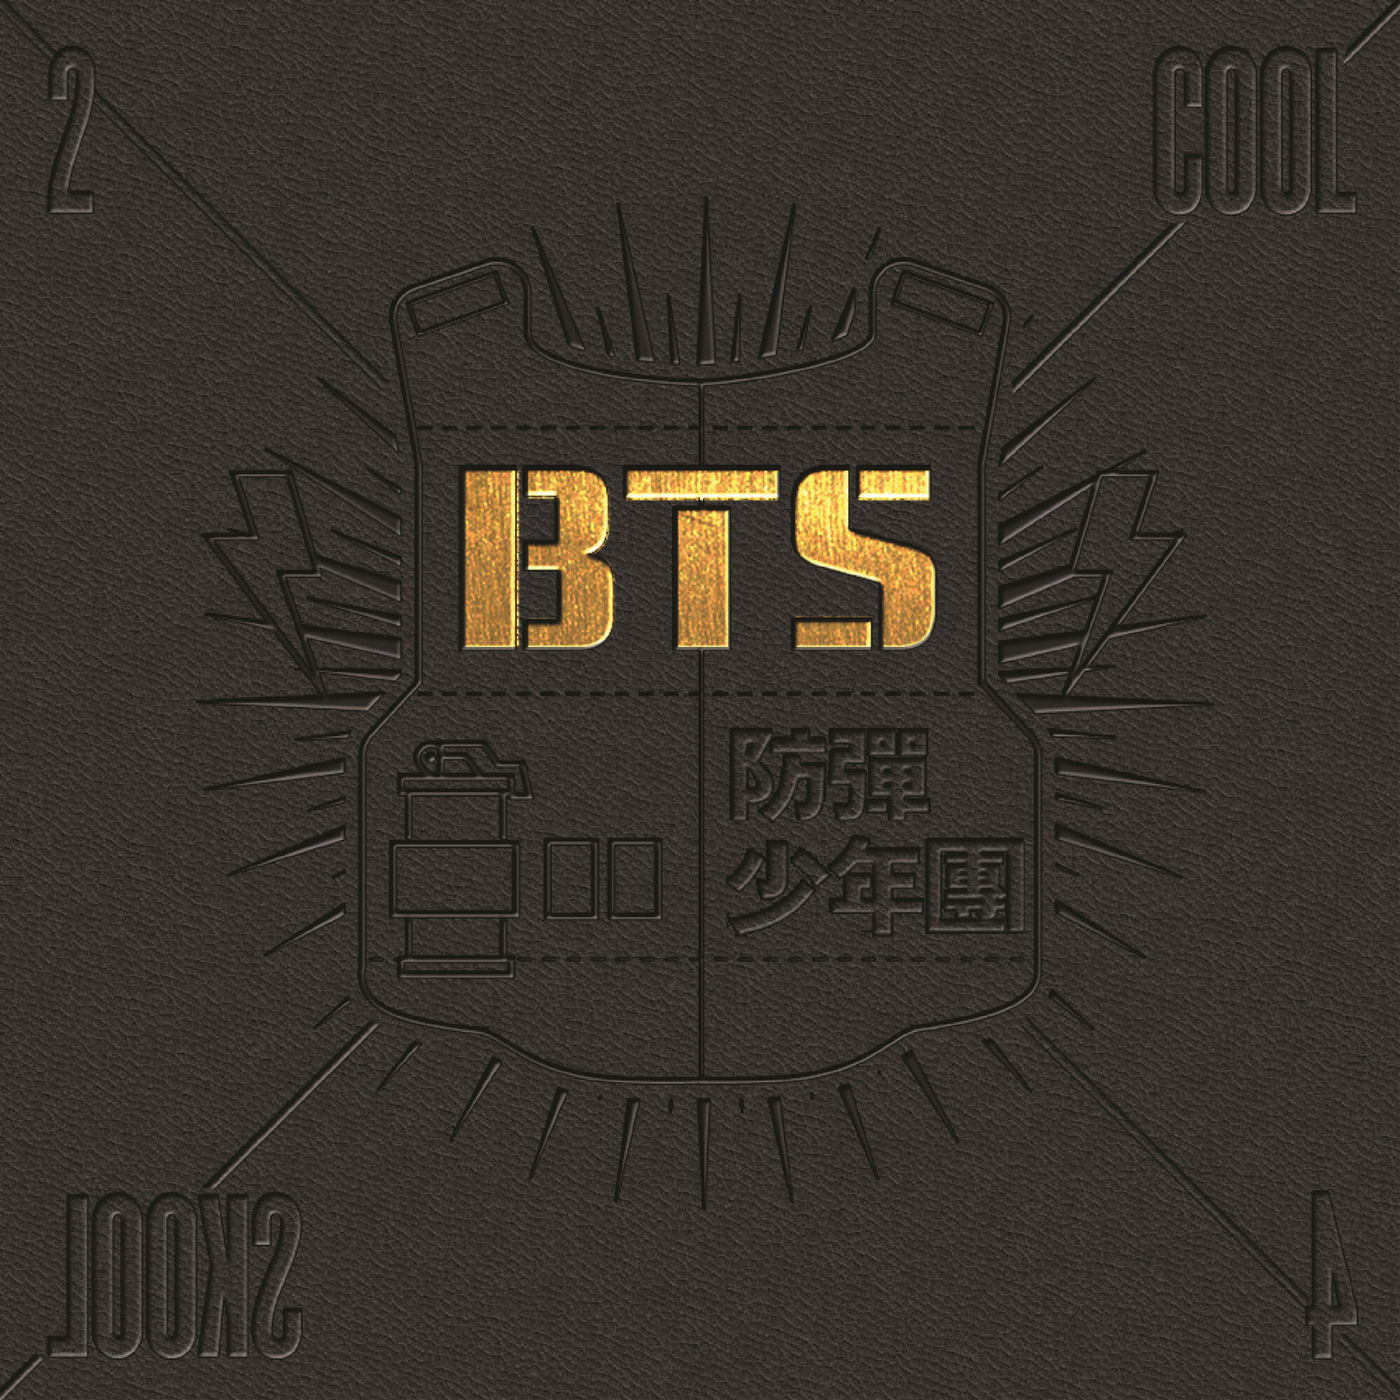 دانلود آلبوم BTS به نام (2013)  2 Cool 4 Skool با کیفیت FLAC 🔥